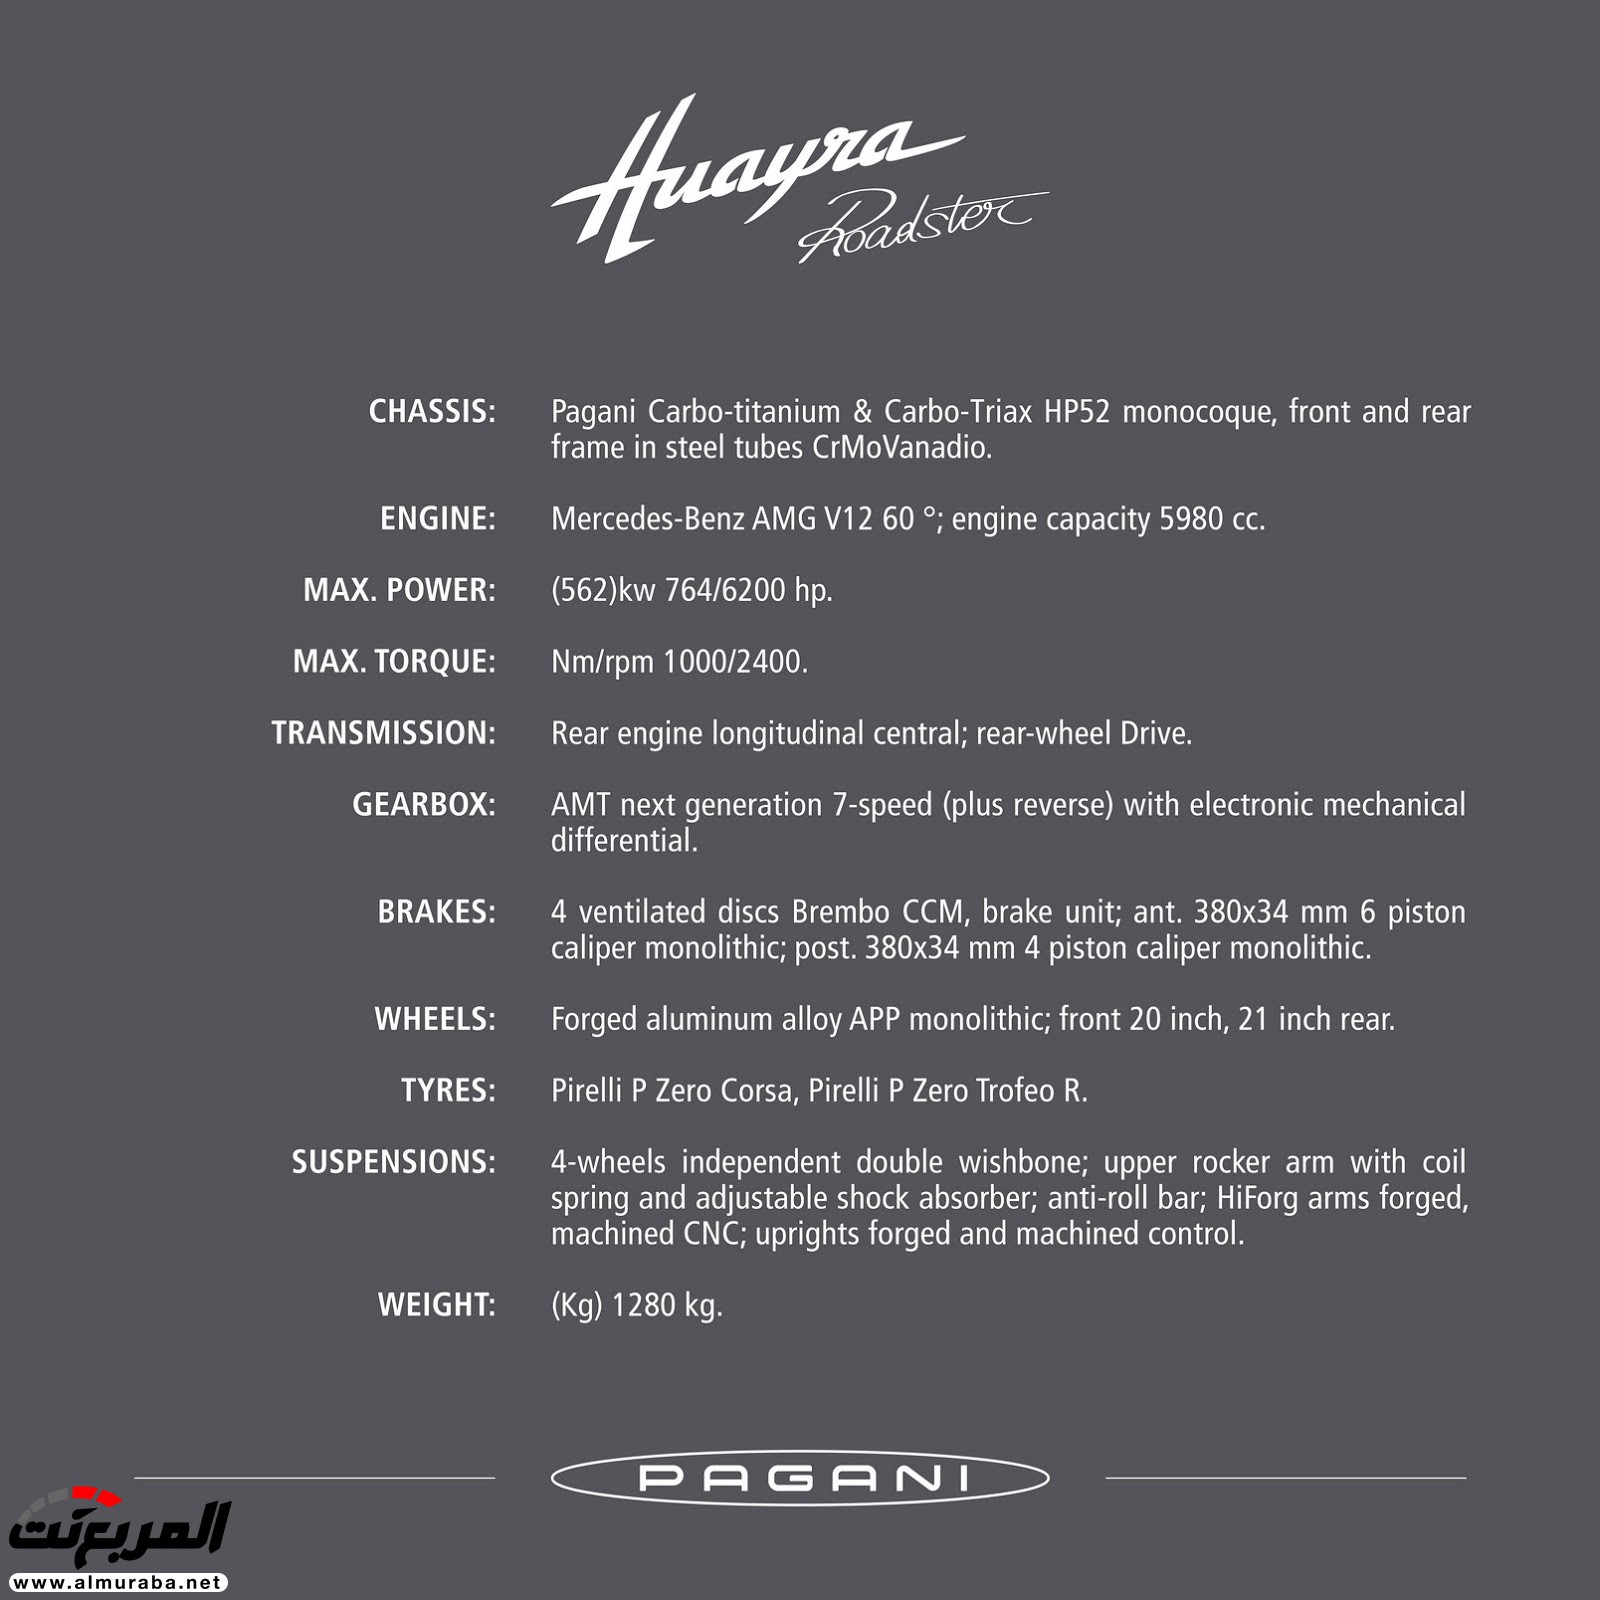 "باجاني" هوايرا رودستر يكشف عنها متألقة بسقف مكشوف وقوة 754 حصان Pagani Huayra Roadster 2